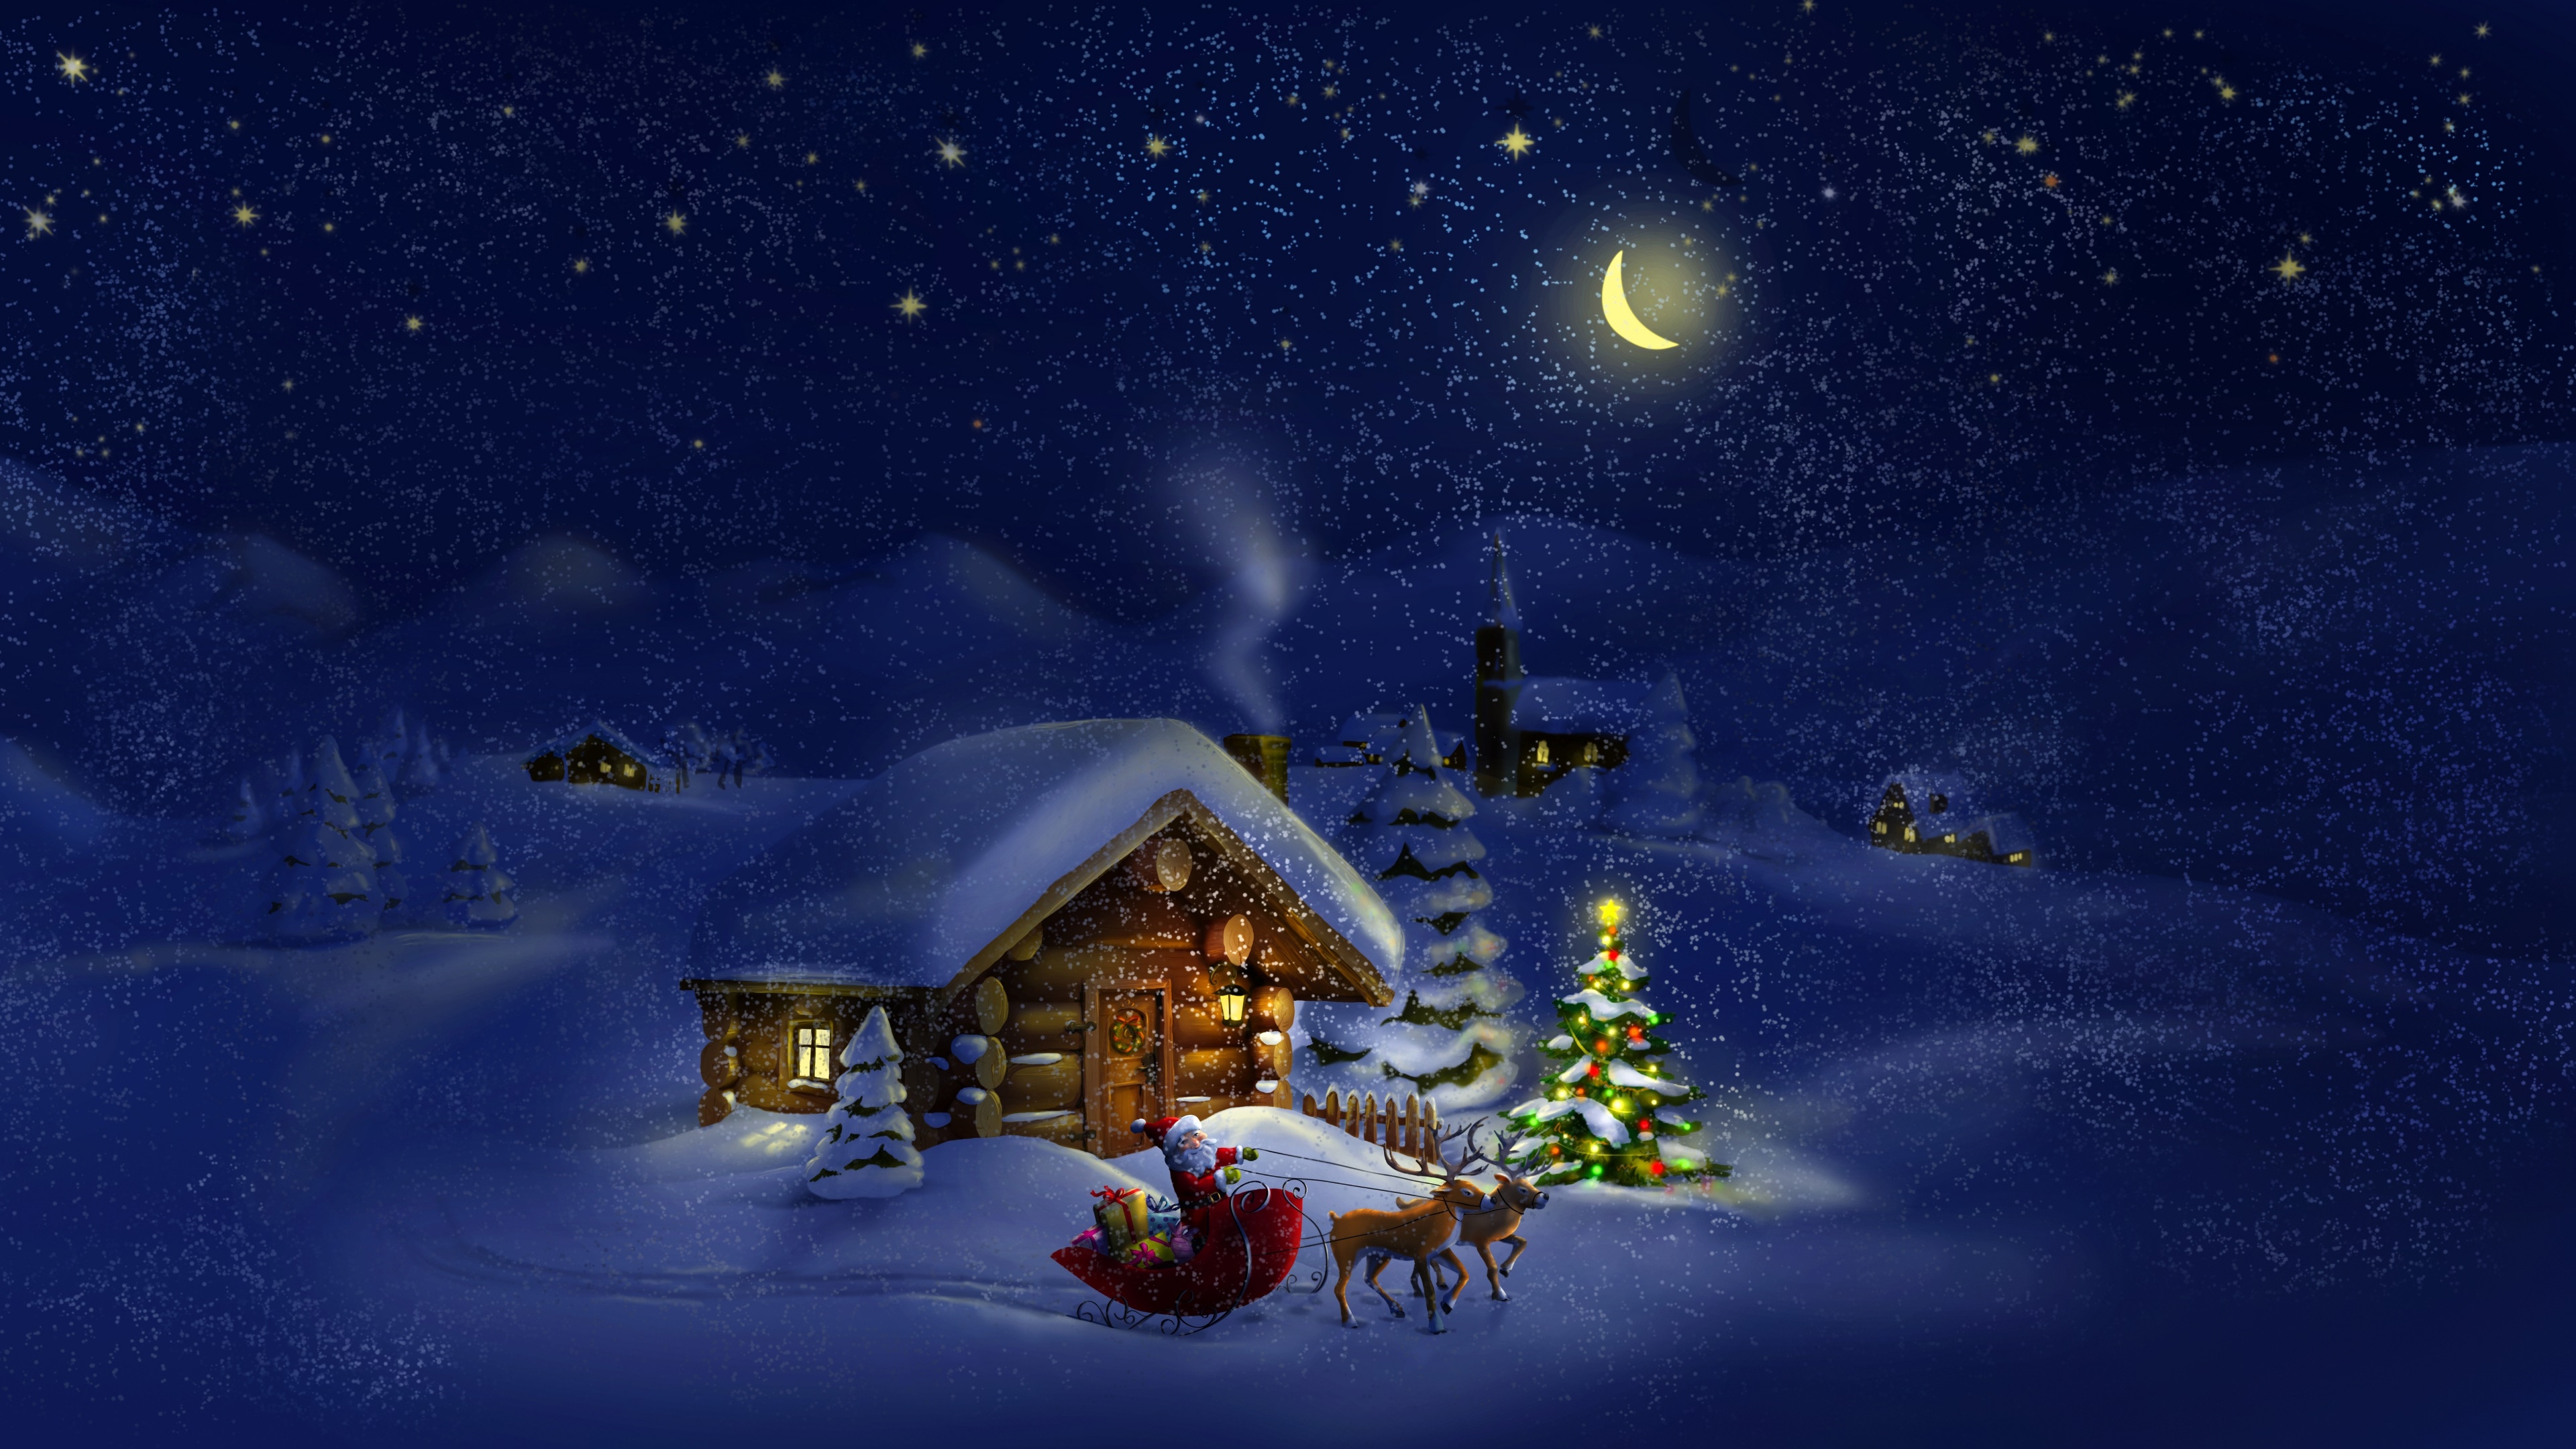 Hãy cùng đắm chìm vào không gian Giáng sinh đêm muộn đầy mơ mộng với hình ảnh đặc biệt. Một không gian đầy ấm áp và hạnh phúc đang chờ đón bạn. Những khung cảnh đẹp như tranh vẽ, làm say mê những ai yêu thích không khí Giáng sinh đầy lãng mạn và mơ mộng.